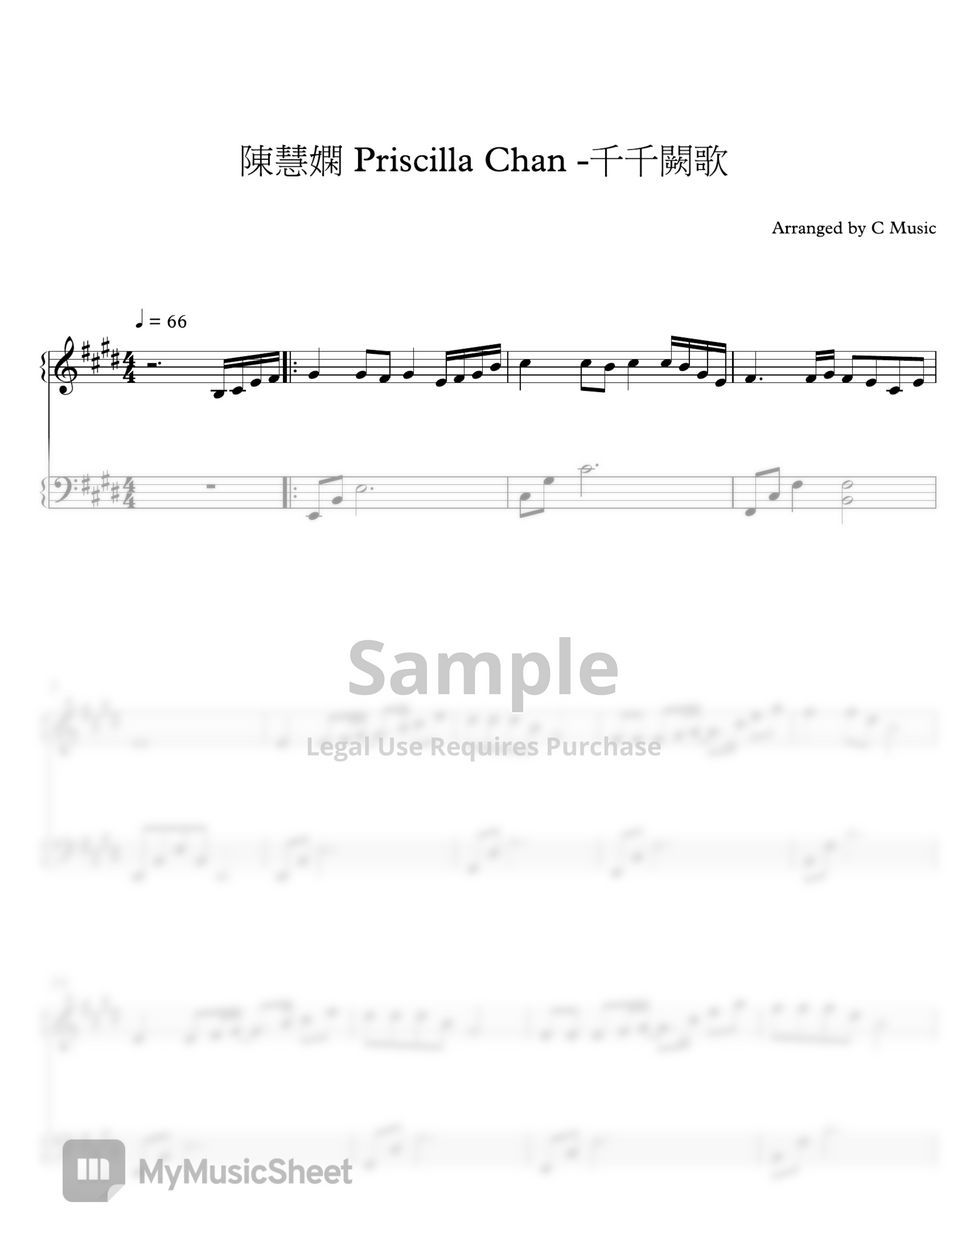 陳慧嫻 Priscilla Chan - 千千闕歌 by C Music